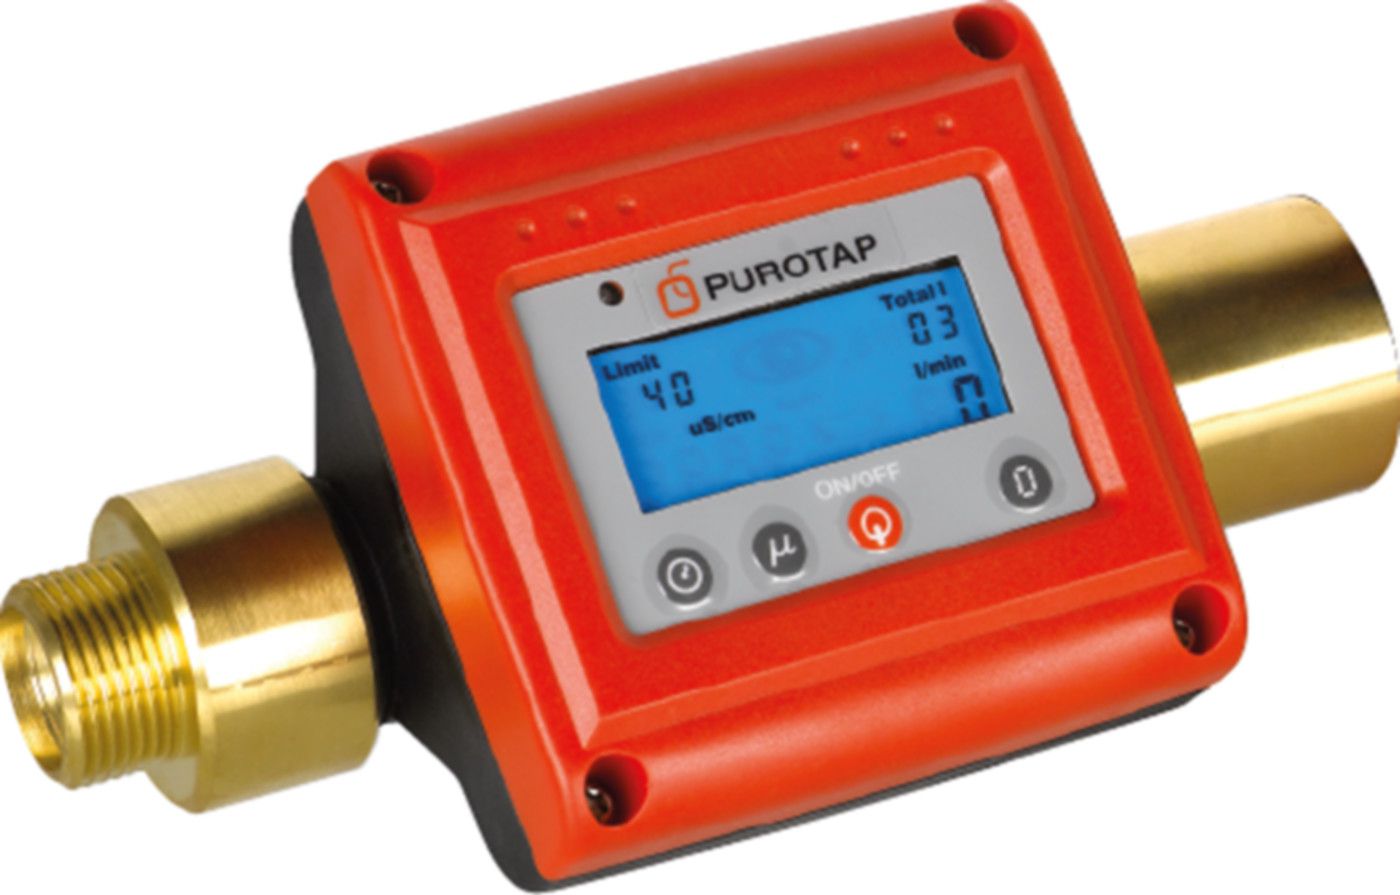 Purotap Messzähler LFM-20    102120 m/Batteriebetrieb inkl. Verschraubung - Elysator Heizungswasseraufbereitung